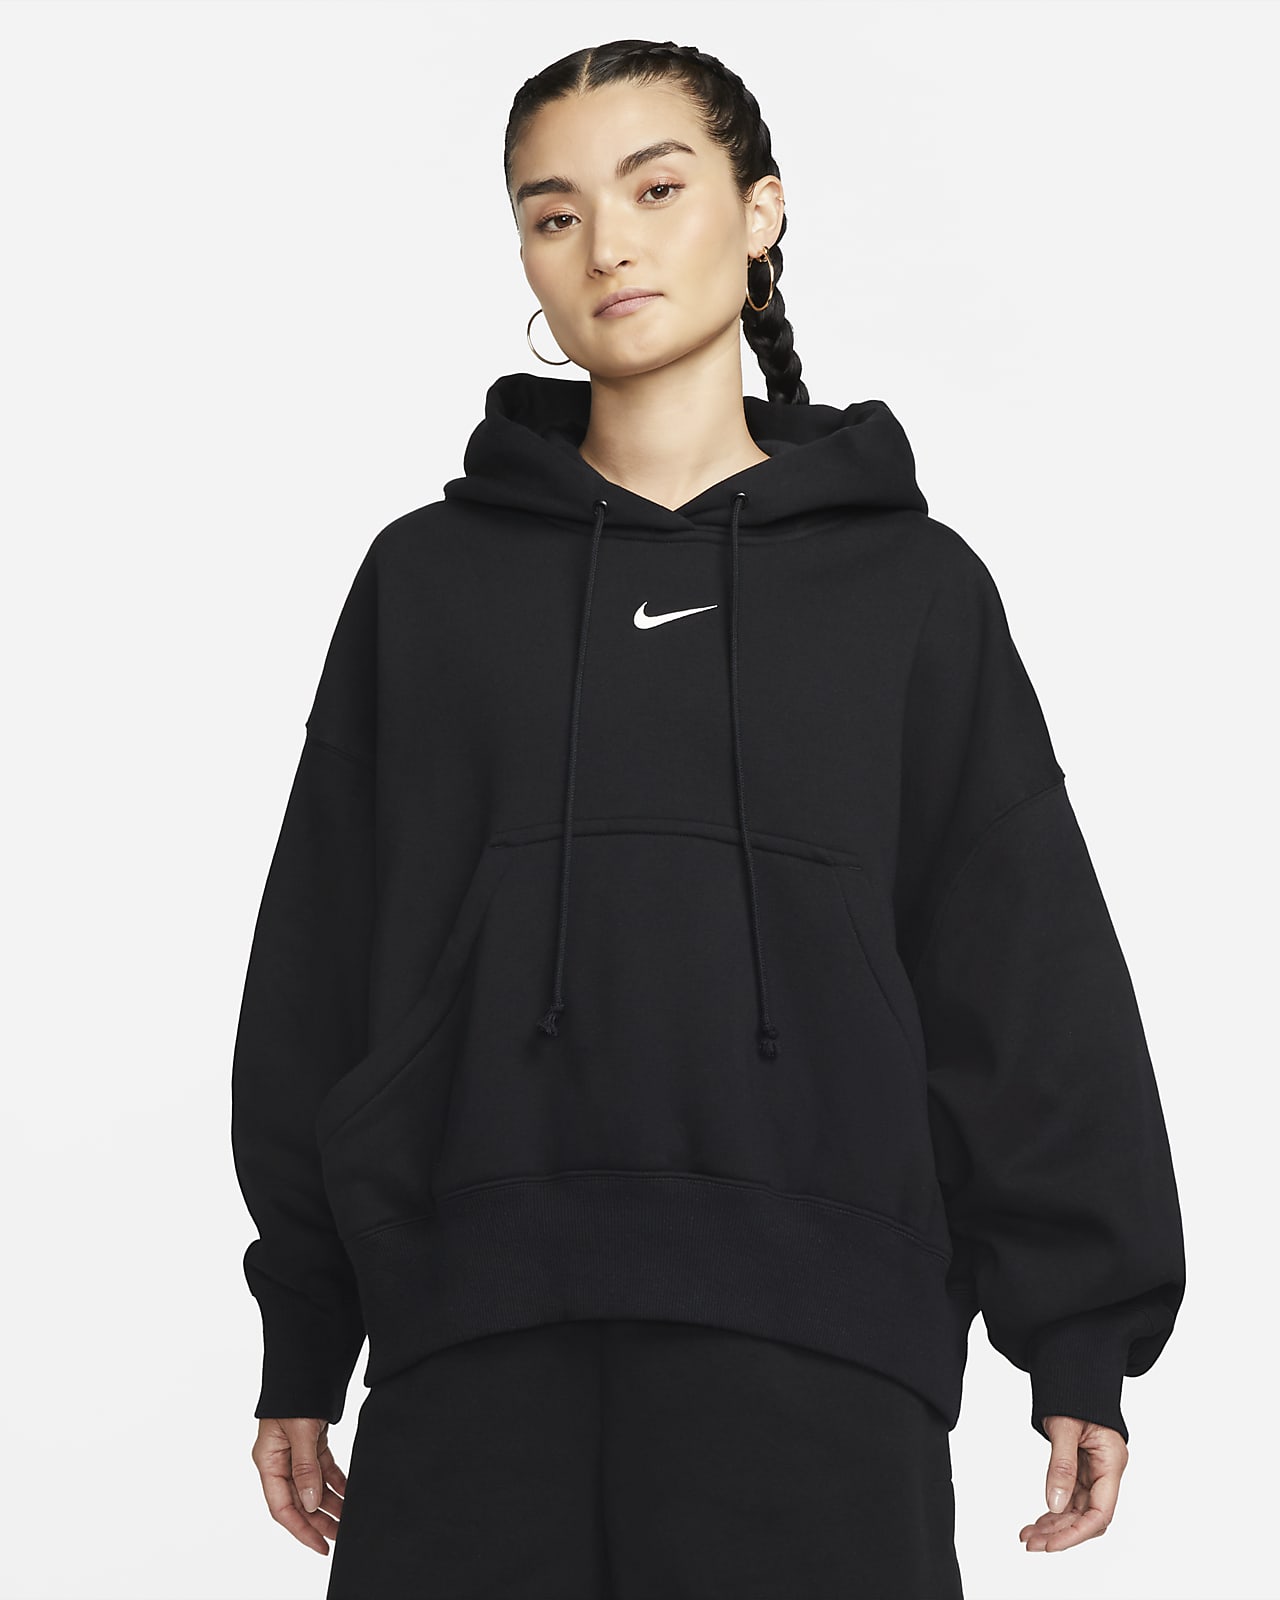 Manteaux femme Nike en ligne